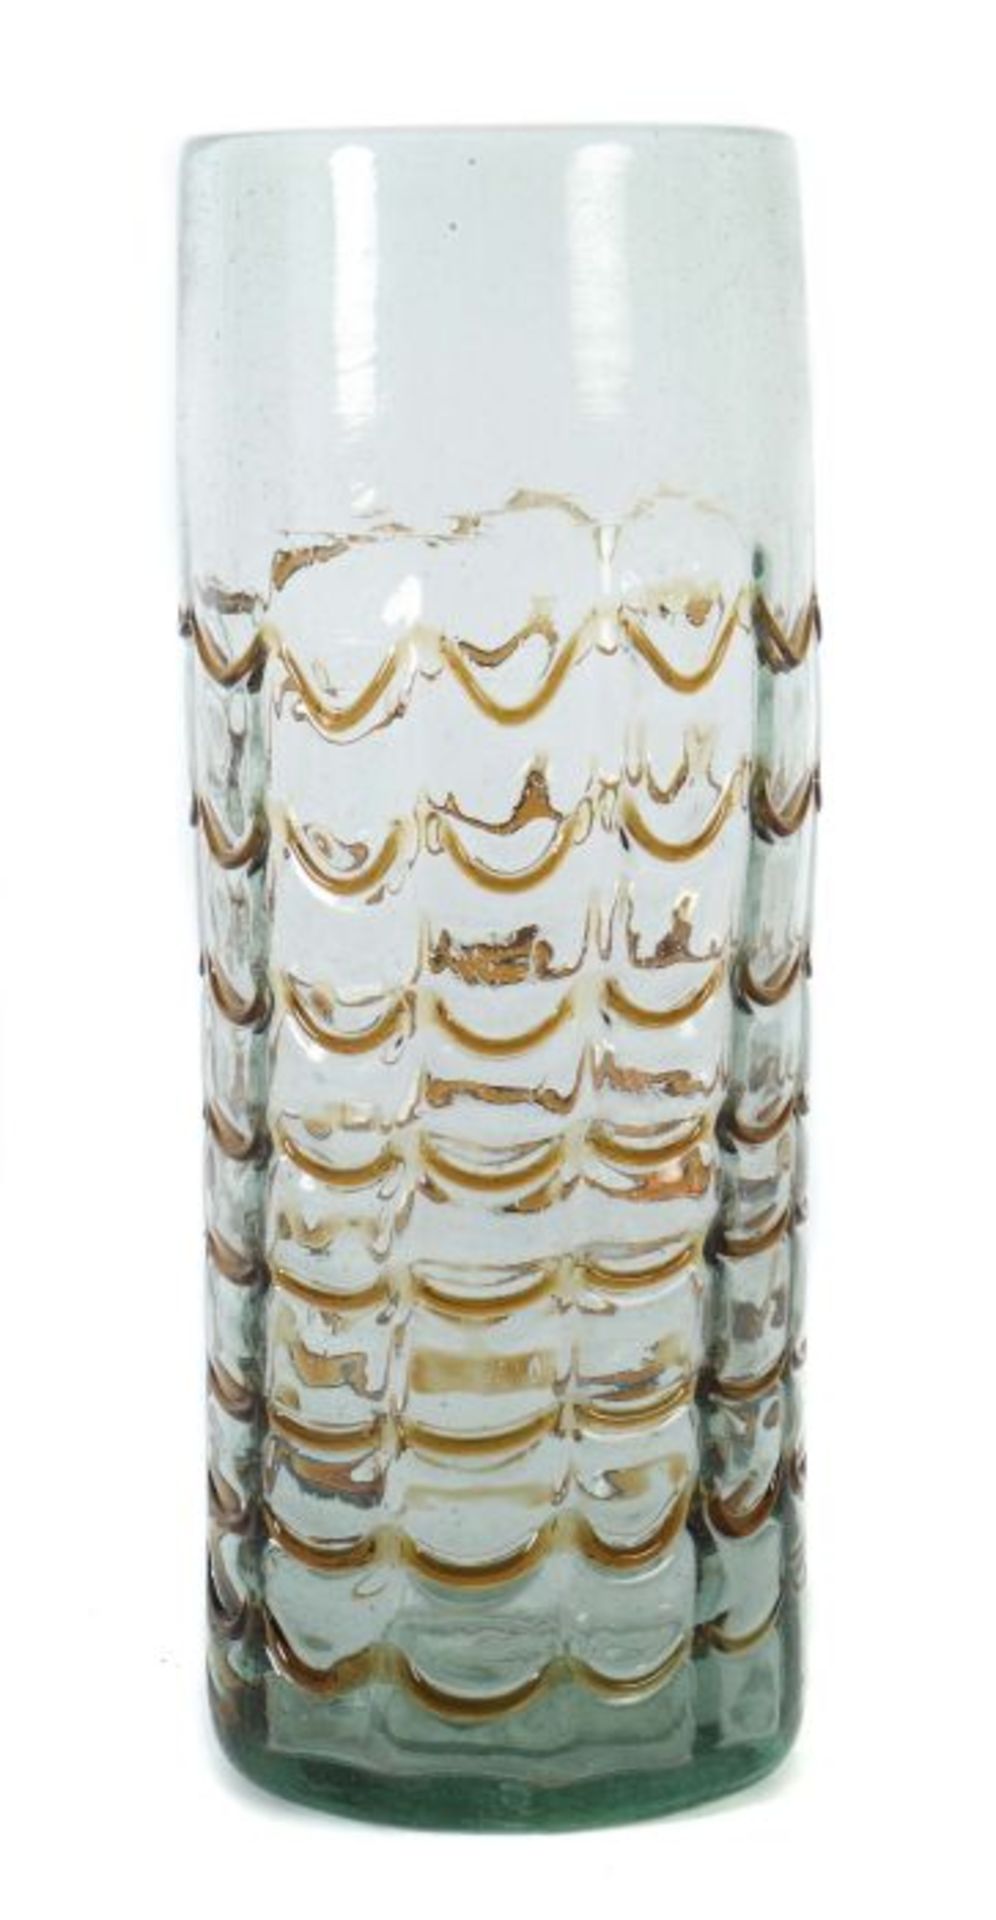 Großes Stangenglas Wohl 19. Jh., grünstichiges, blasiges Glas mit leicht hochgestochenem Boden und